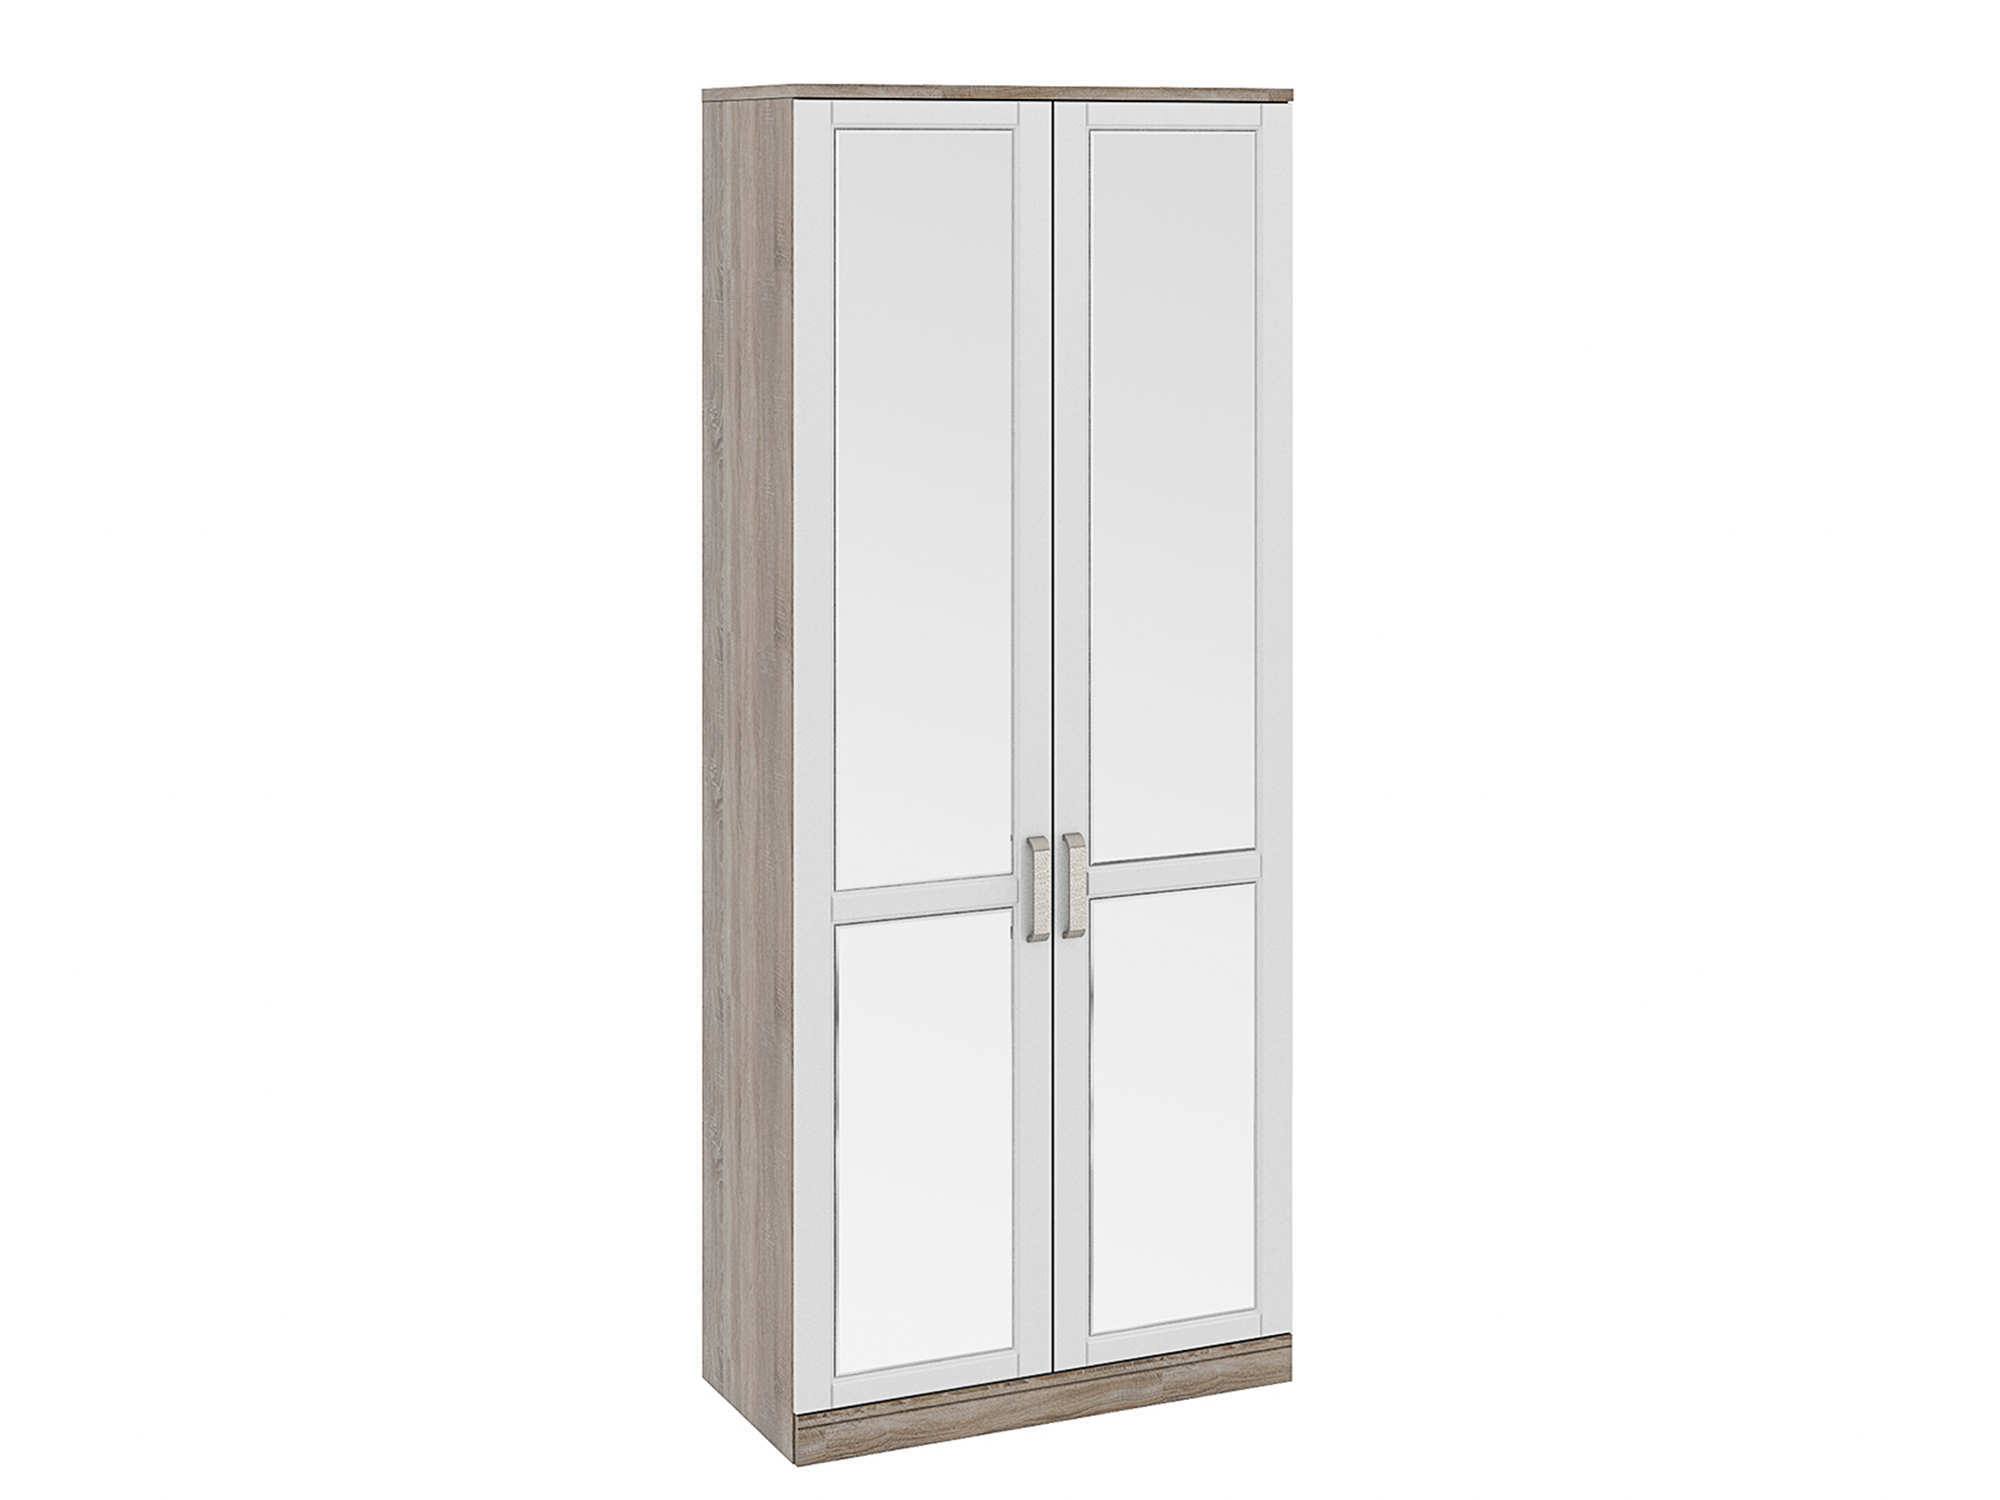 Шкаф для одежды с 2-мя зеркальными дверями Прованс Крем, Белый, Бежевый, МДФ, Зеркало, ЛДСП либерти шкаф для одежды с 2 дверями